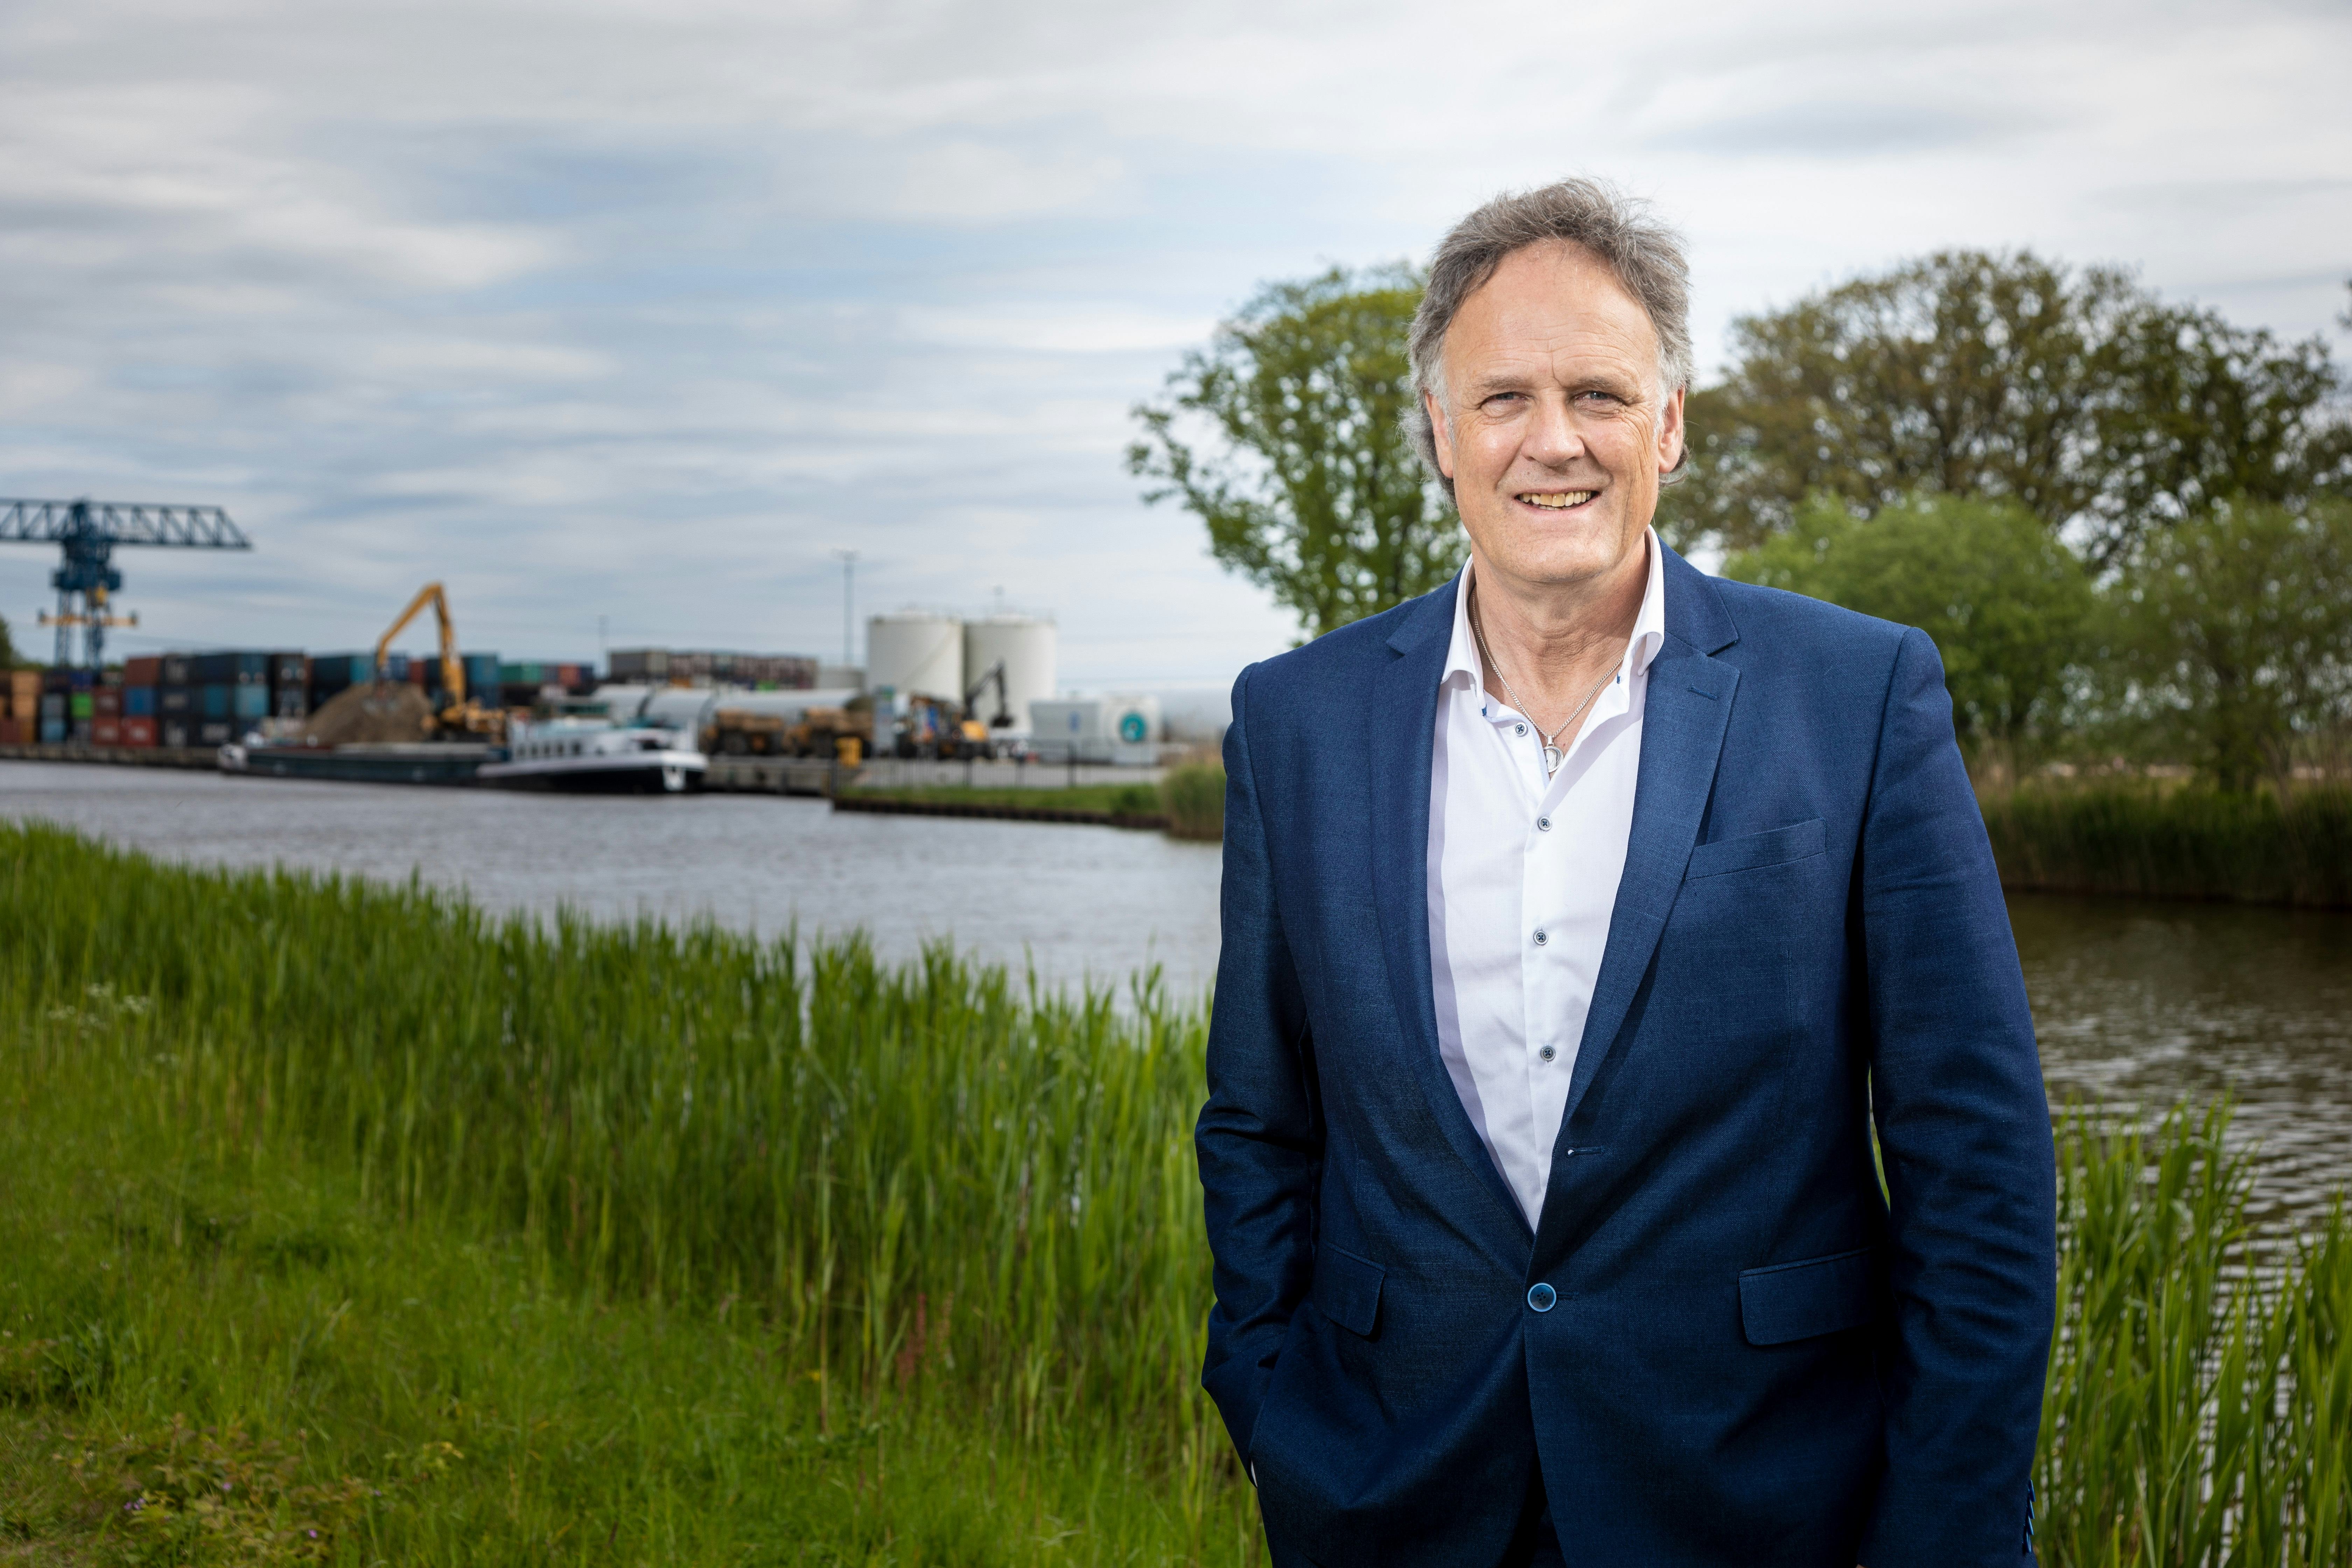 Gerry Waanders (Port of Twente): "Voor de profilering van oost Nederland is Airport Twente belangrijk voor het afhandelen van luchtvracht." 
Joris Fotografie